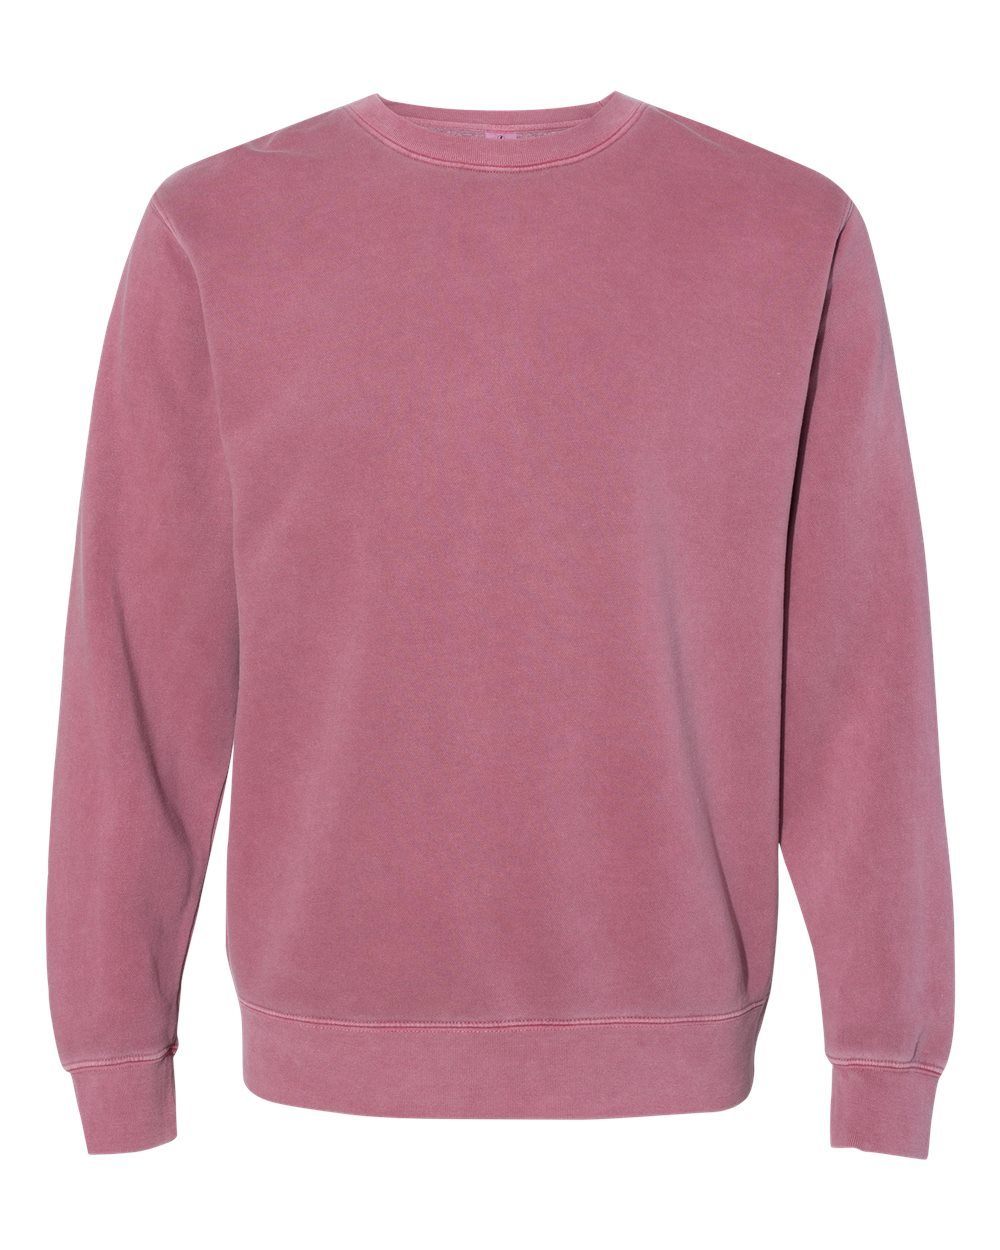 Unisex Pigment-Dyed Crew Sweatshirt (Maroon) Sweatshirt S&S 